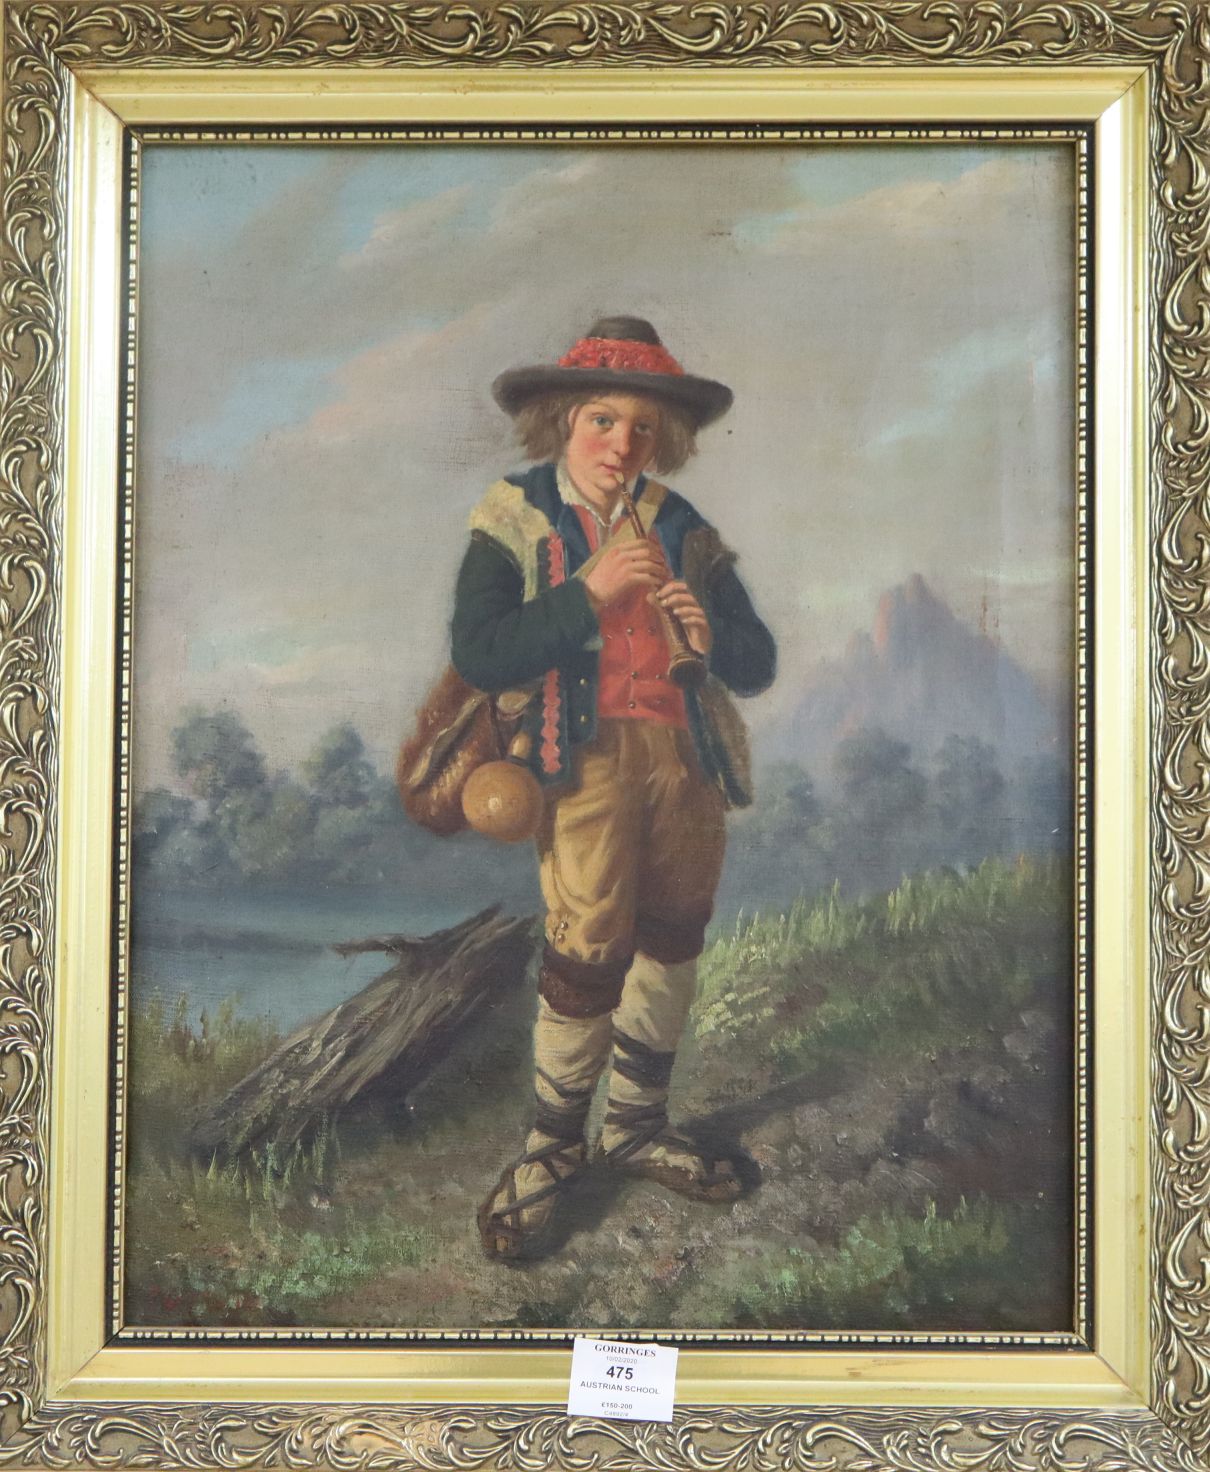 19th century Austrian school, oil on canvas, Tyrolean piper boy, 46 x 37cm